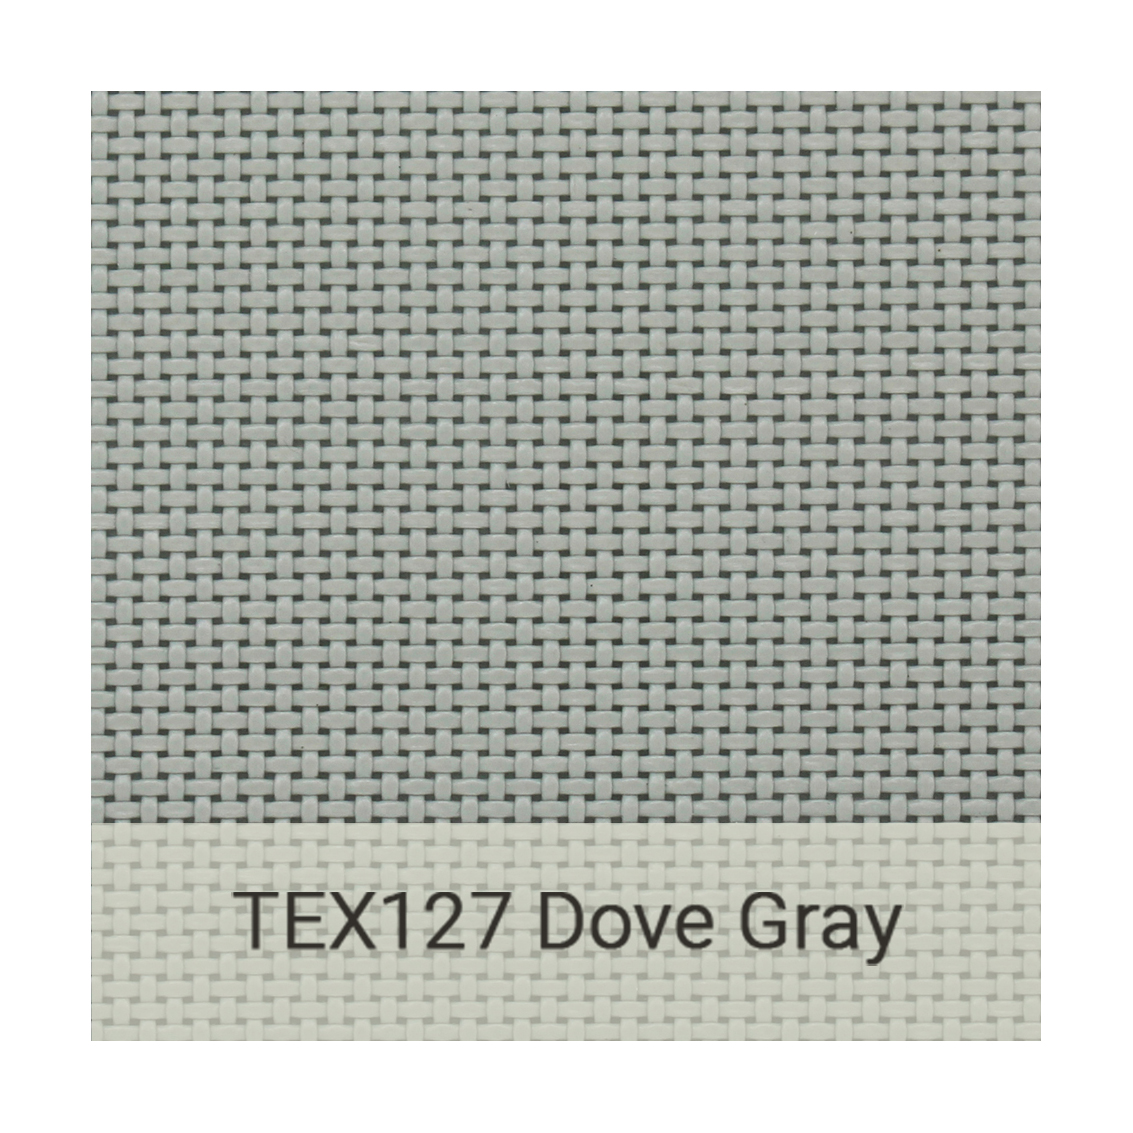 Kingston Casual textiline-tex127-dove-gray